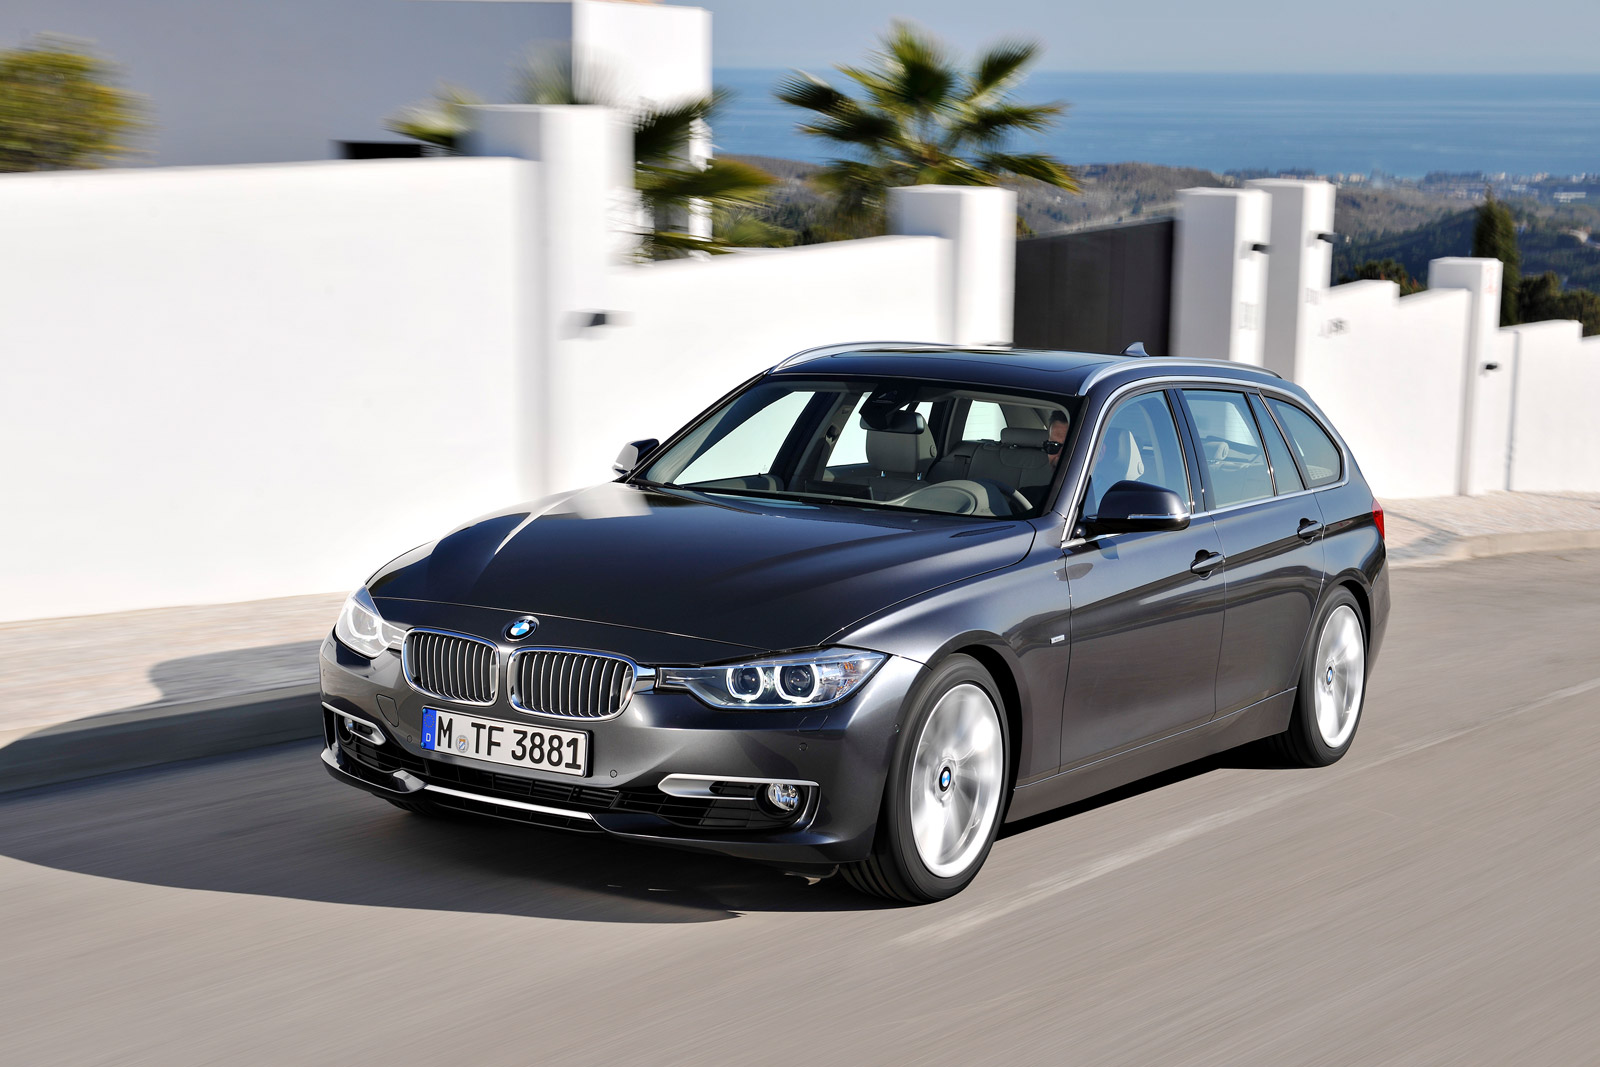 Perceptueel Kind Spuug uit 2014 BMW 328d Diesel Gas Mileage, Prices Revealed [Update]